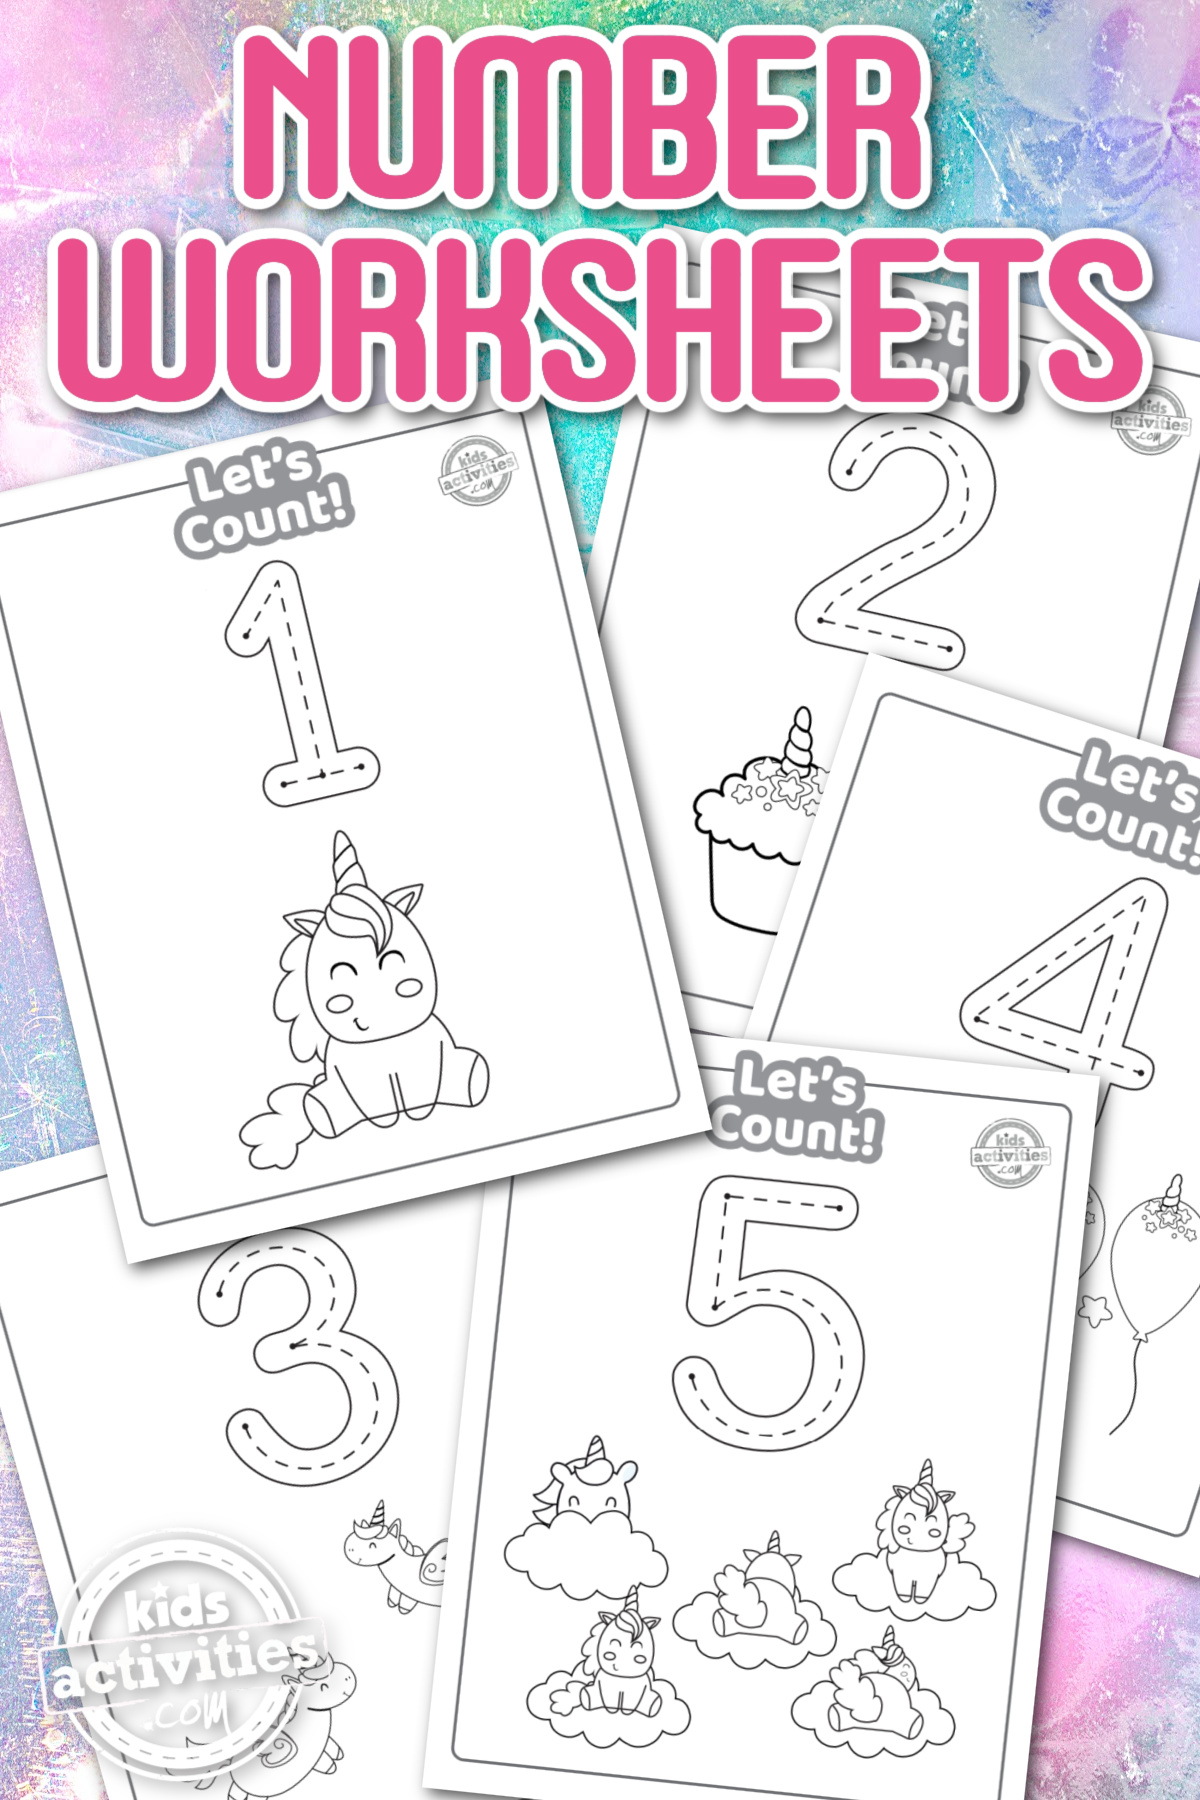 Unicorn number worksheets for preschool - Kids Activities Blog pinterest